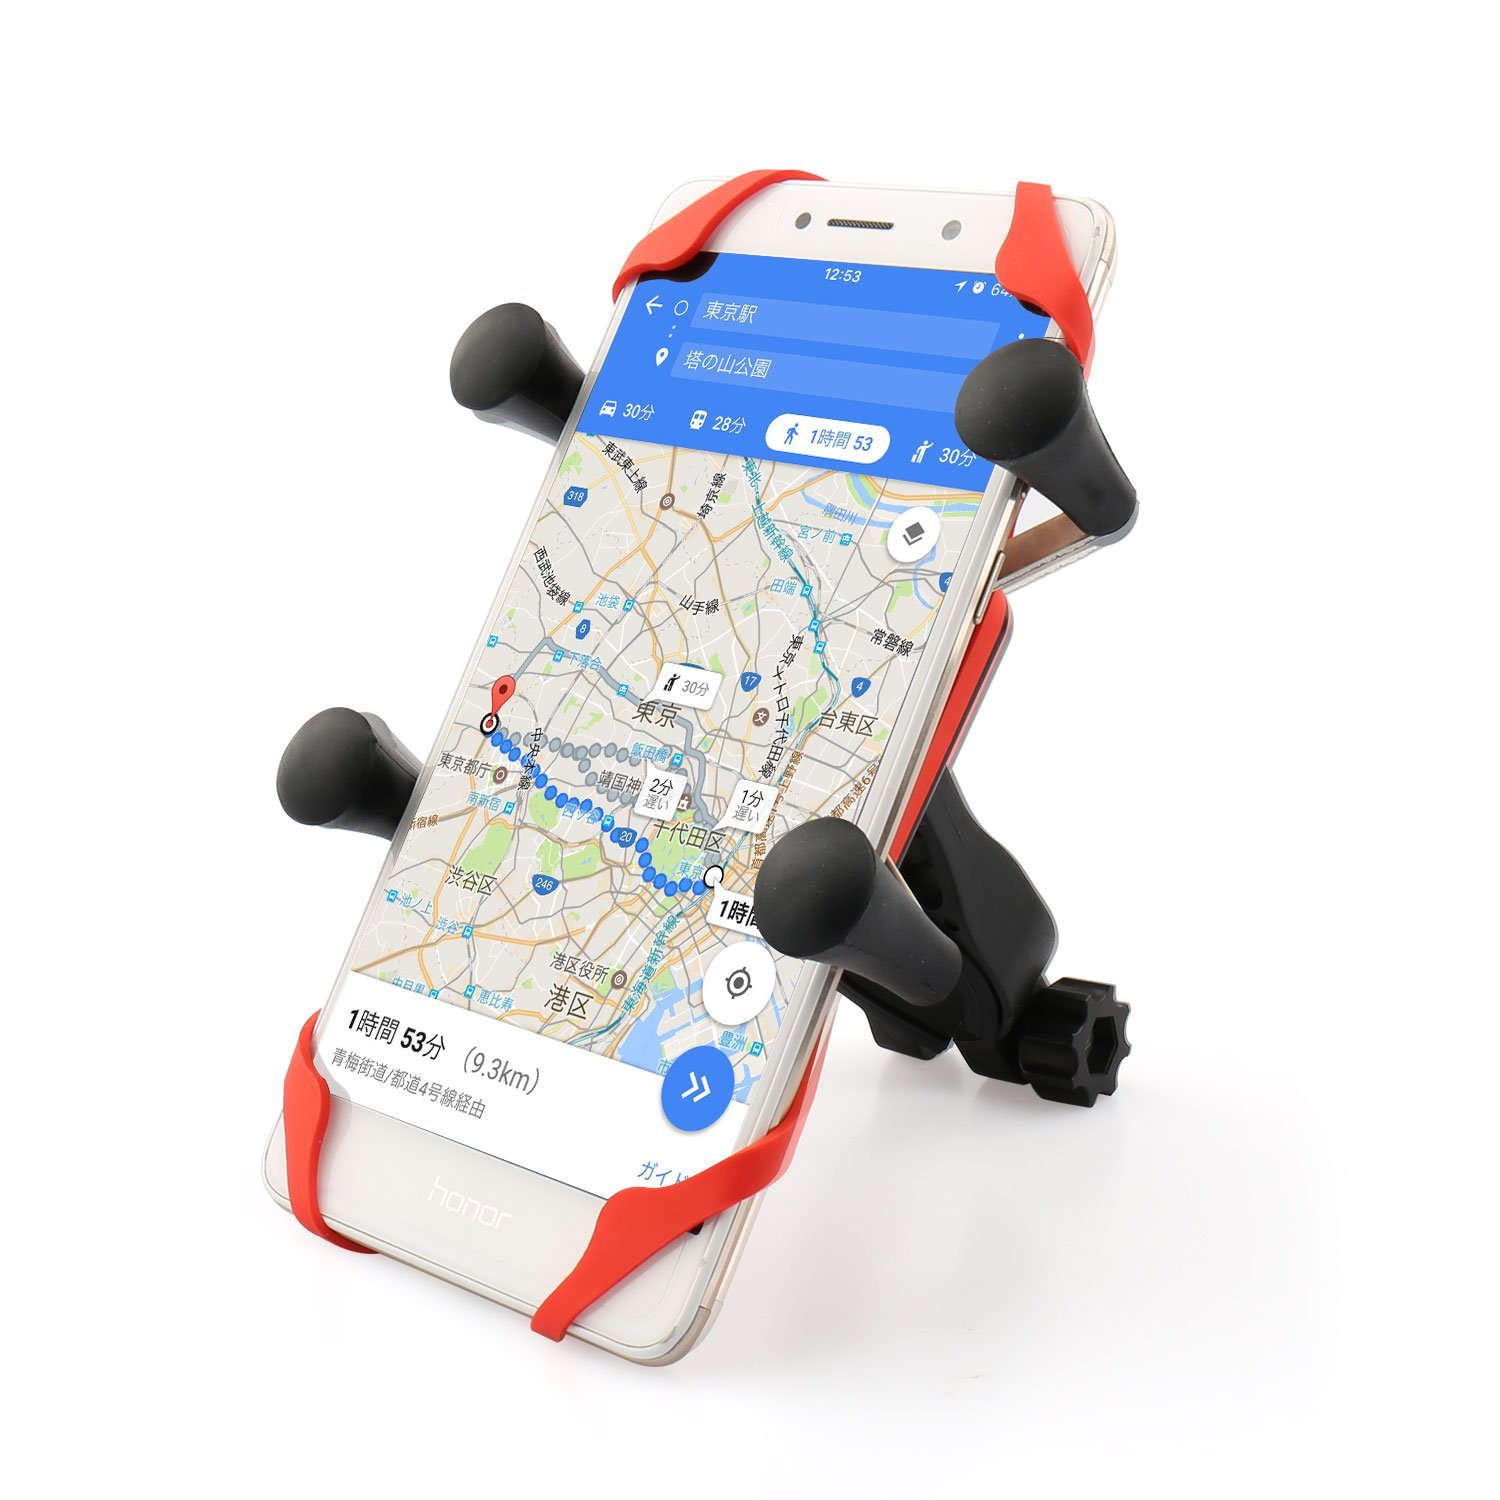 Focusam 自転車ホルダー バイクスマホホルダー 携帯バイクスタンド GPSナビ・スマホ・iPhone固定用 バーマウントキット 360度調整可能  落下防止 iPhone/Samsung/Sony/GPSなど多機種対応-COOWOO